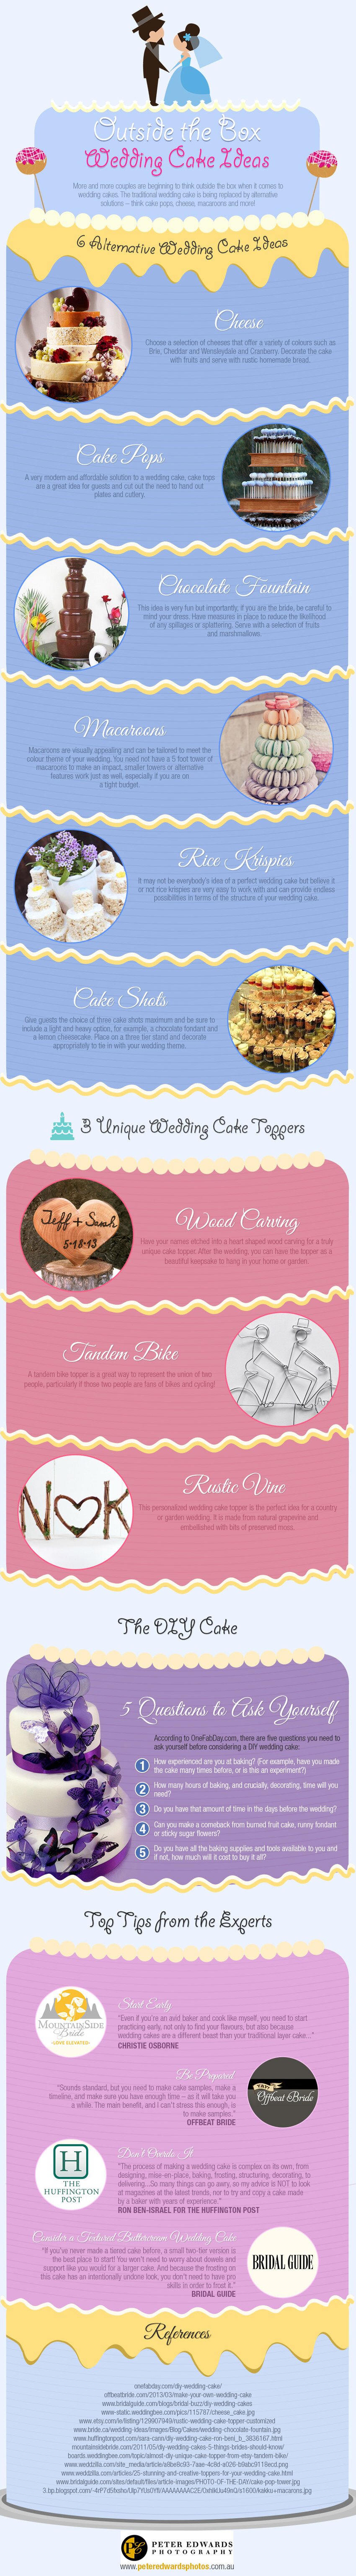 Wedding cakes ideas infographic